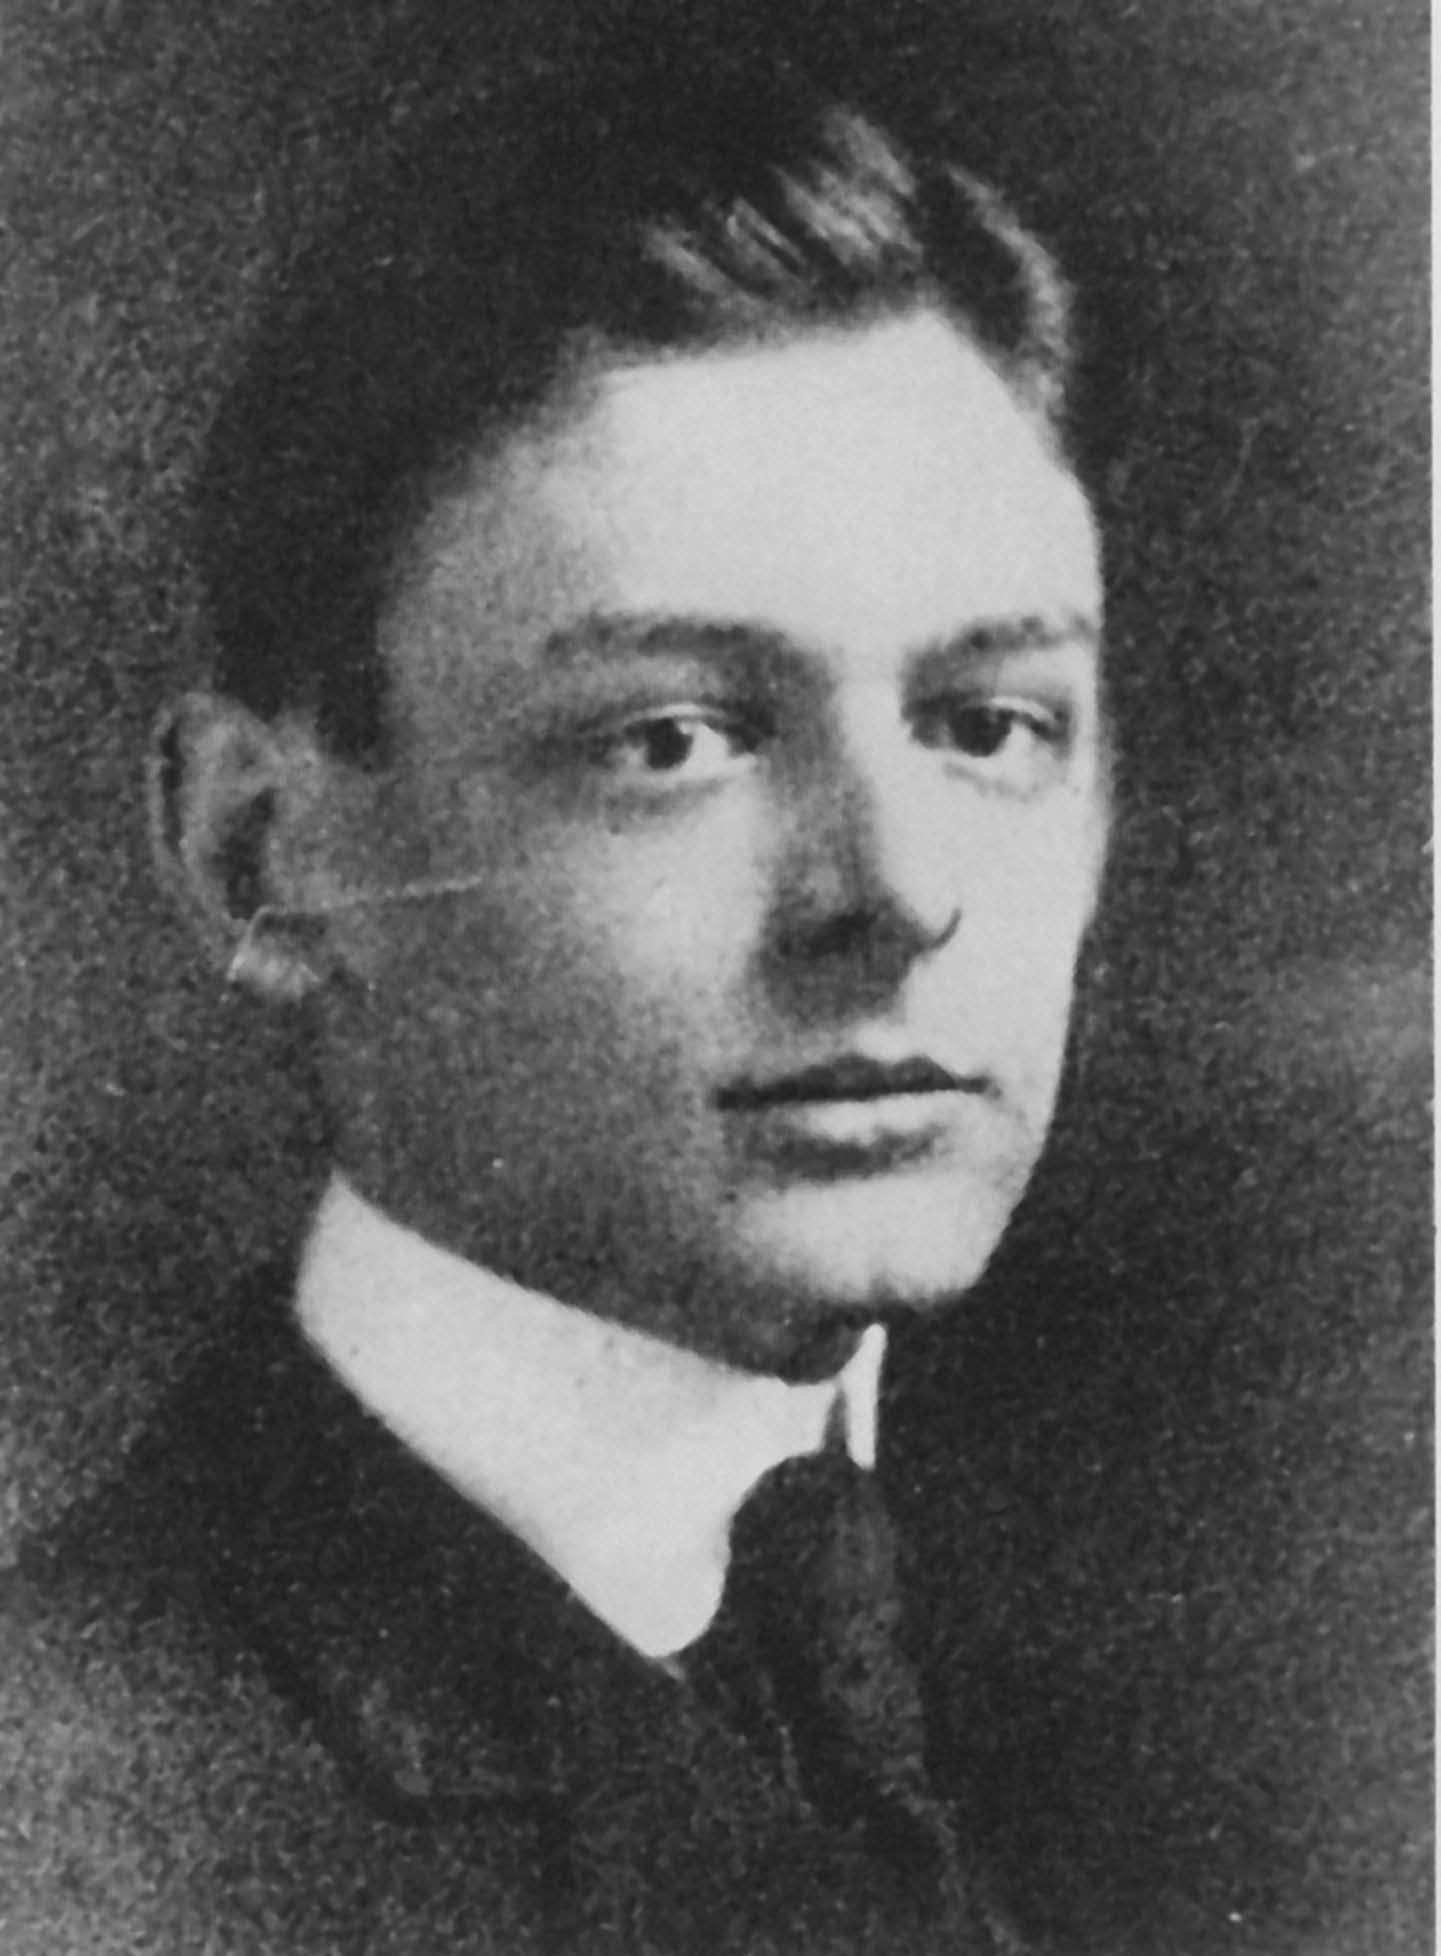 2. Eliot, age 17 (1906), Milton Academy Yearbook, Milton, MA